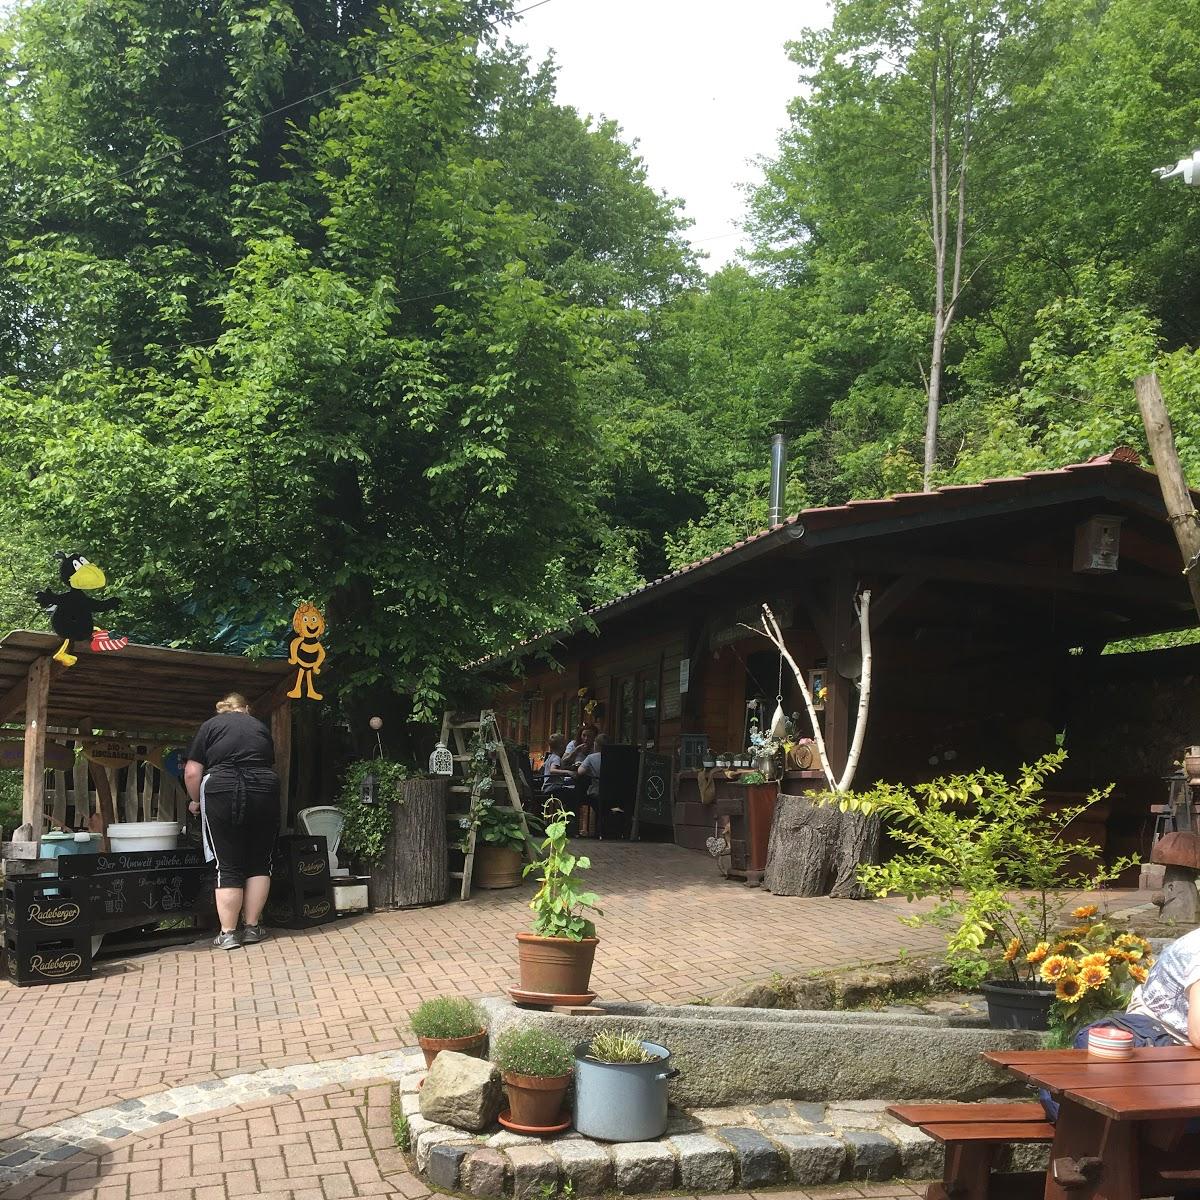 Restaurant "Forellenräucherei Leuschke" in Rathen